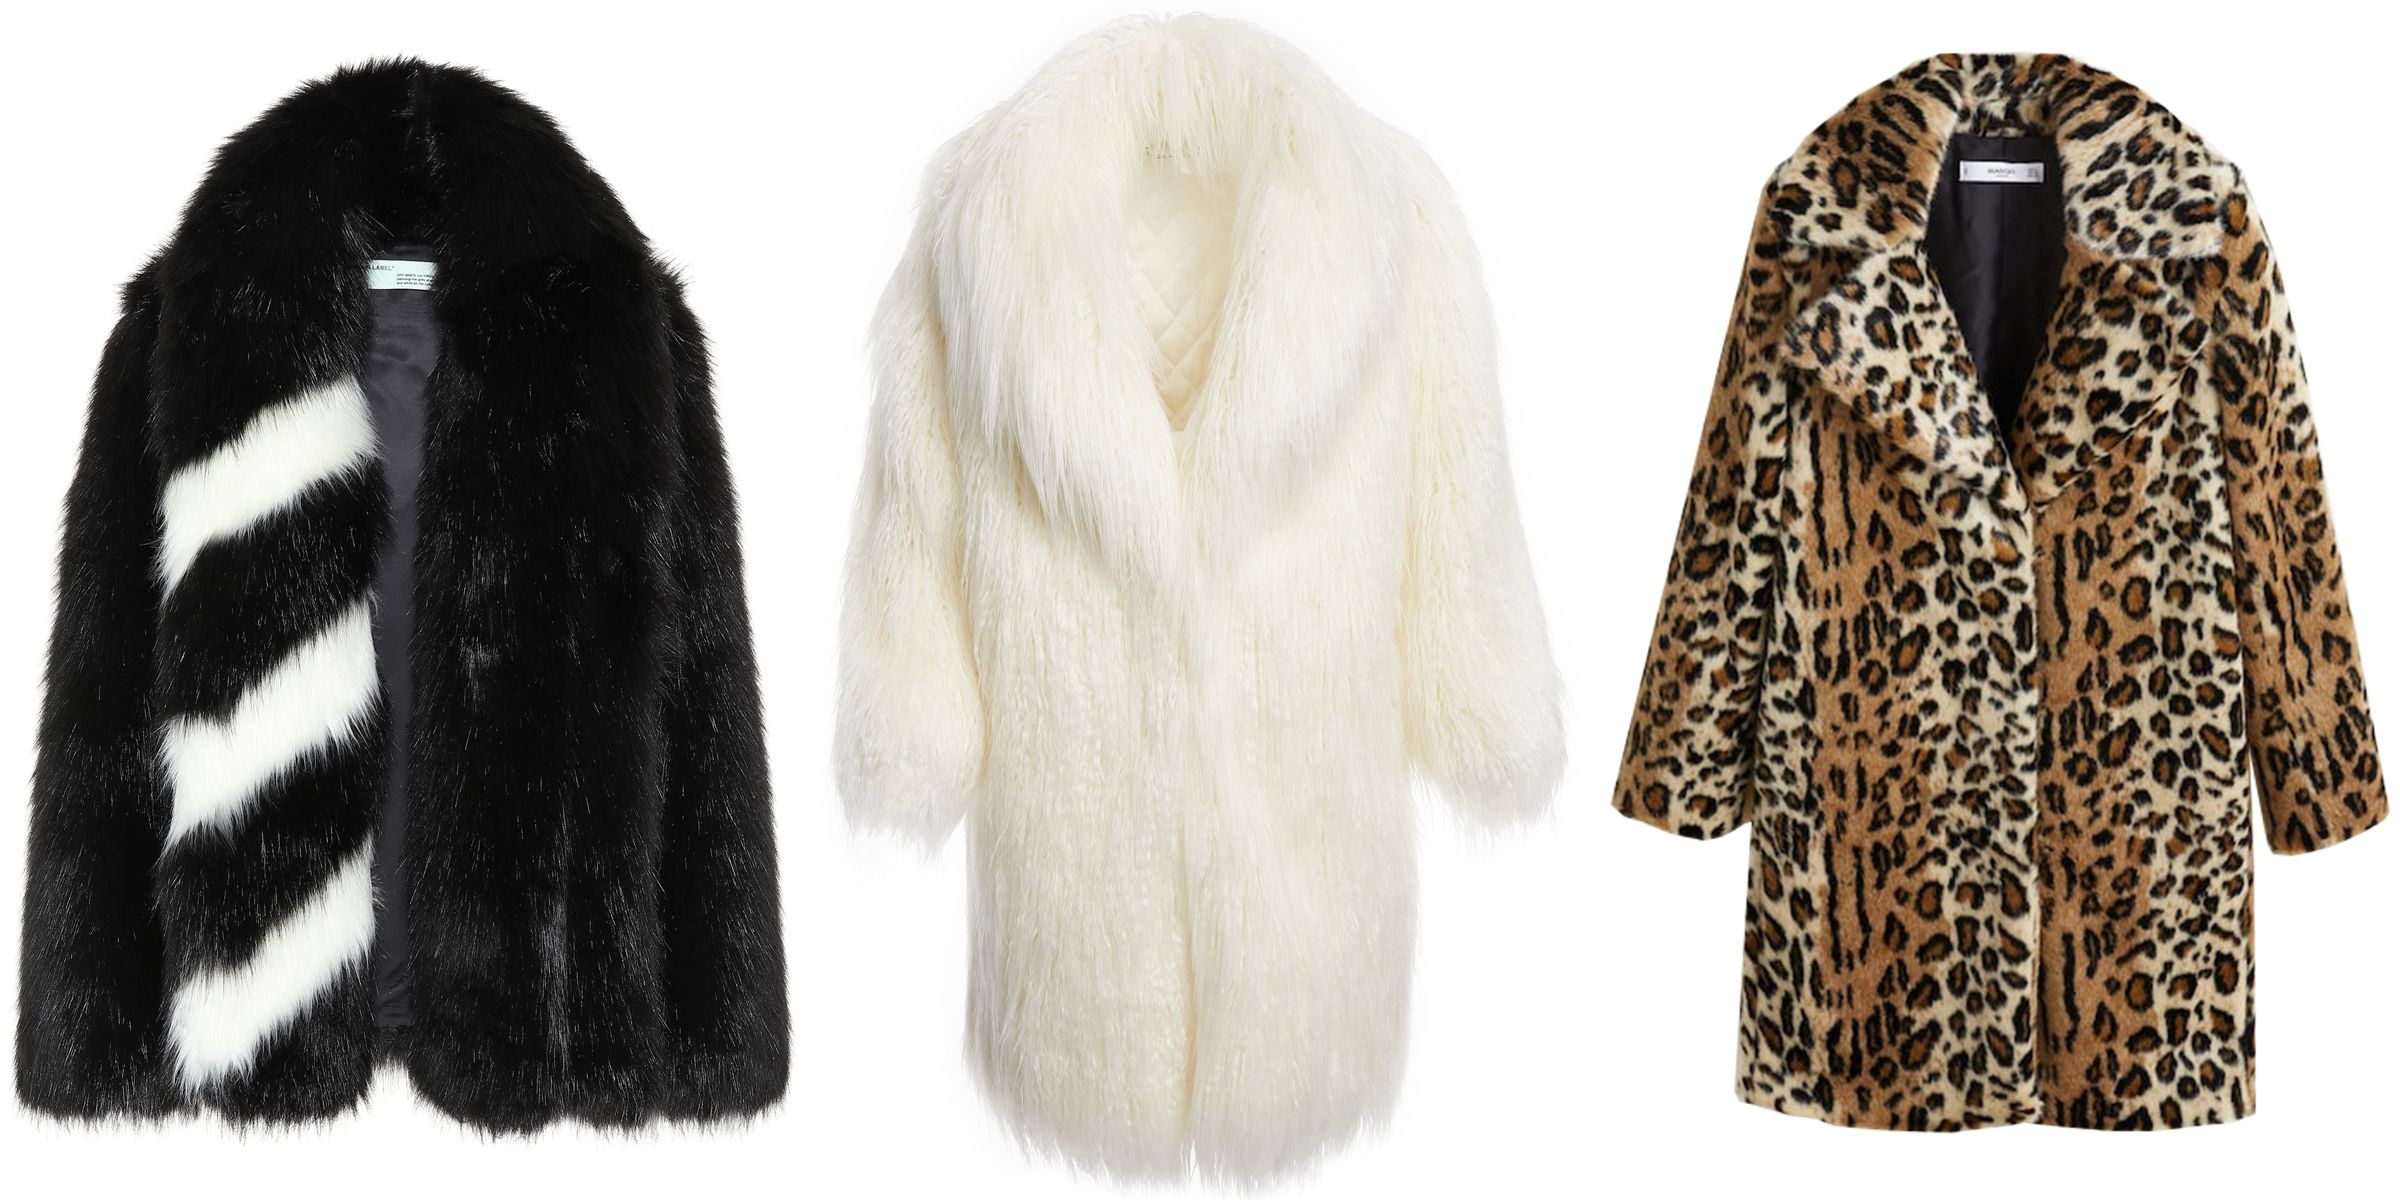 20 Best Faux Fur Jackets For Women 2018, Designer Faux Fur Coats